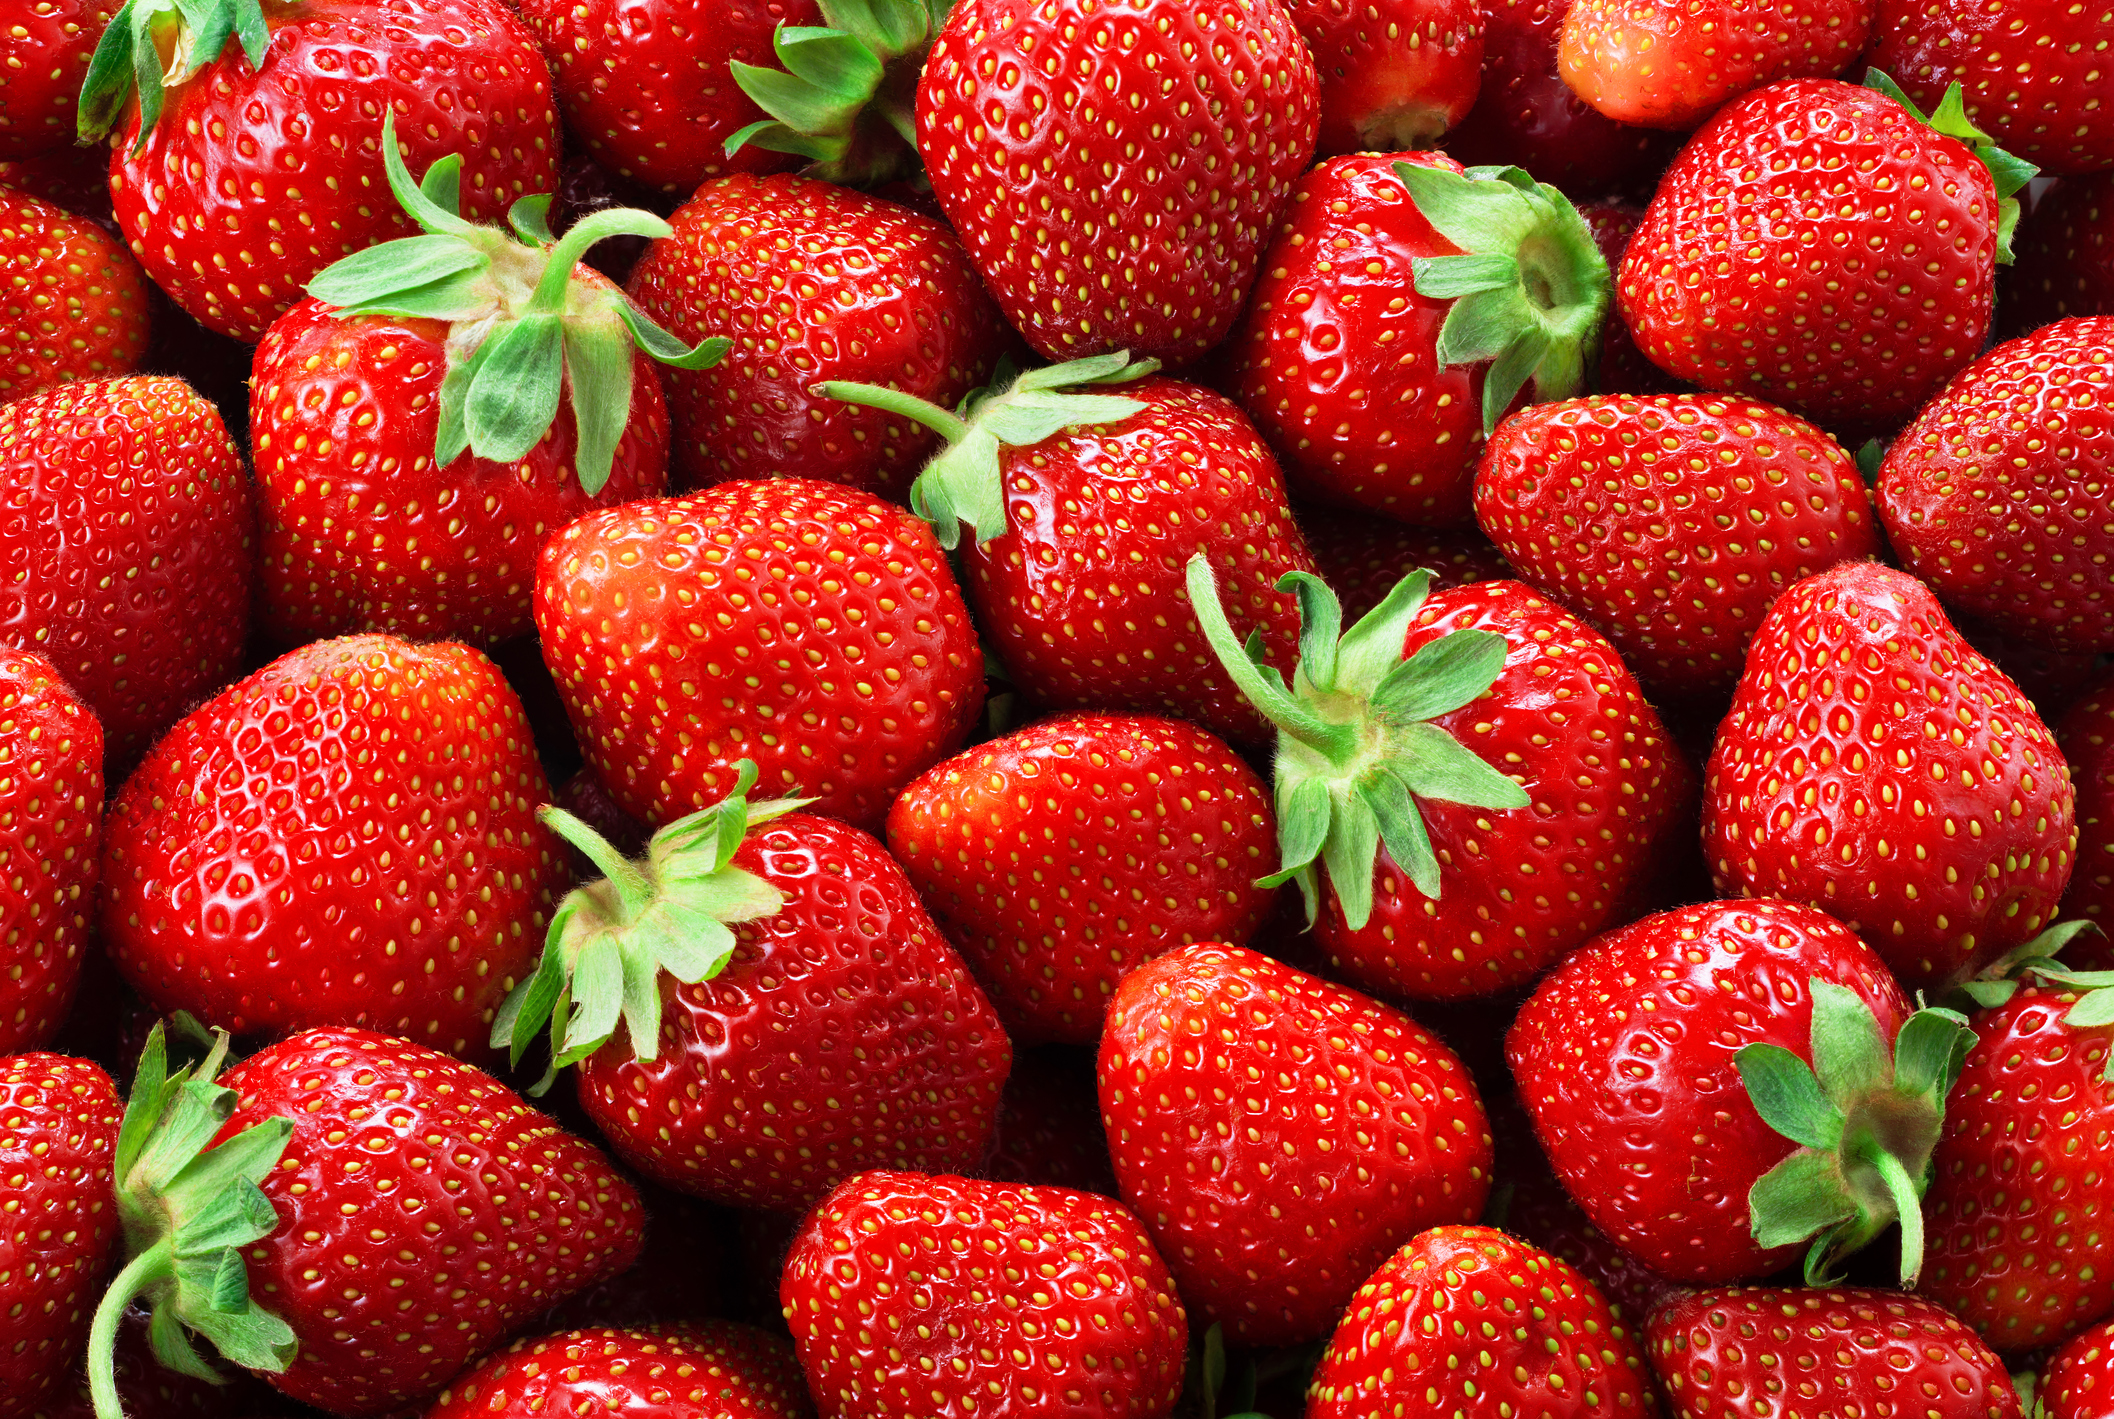 Сложете ги на студено<br />
Ако не планирате да консумирате ягодите веднага, сложете ги в хладилника или дори във фризера. Така със сигурност ще се запазят свежи за по-дълго време.